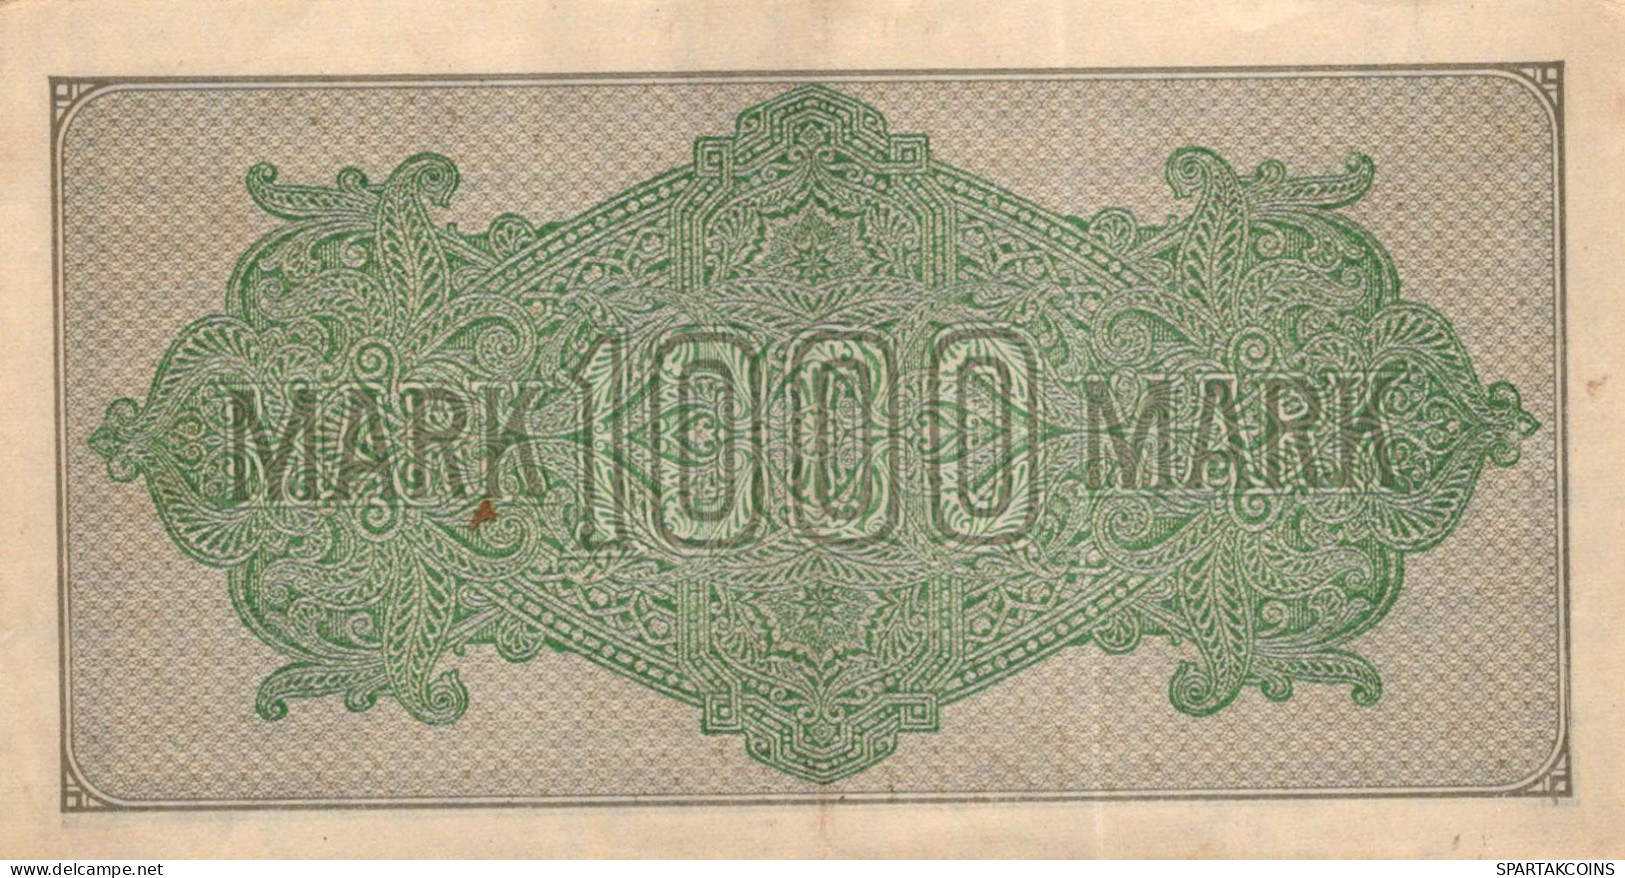 1000 MARK 1922 Stadt BERLIN DEUTSCHLAND Papiergeld Banknote #PL395 - Lokale Ausgaben